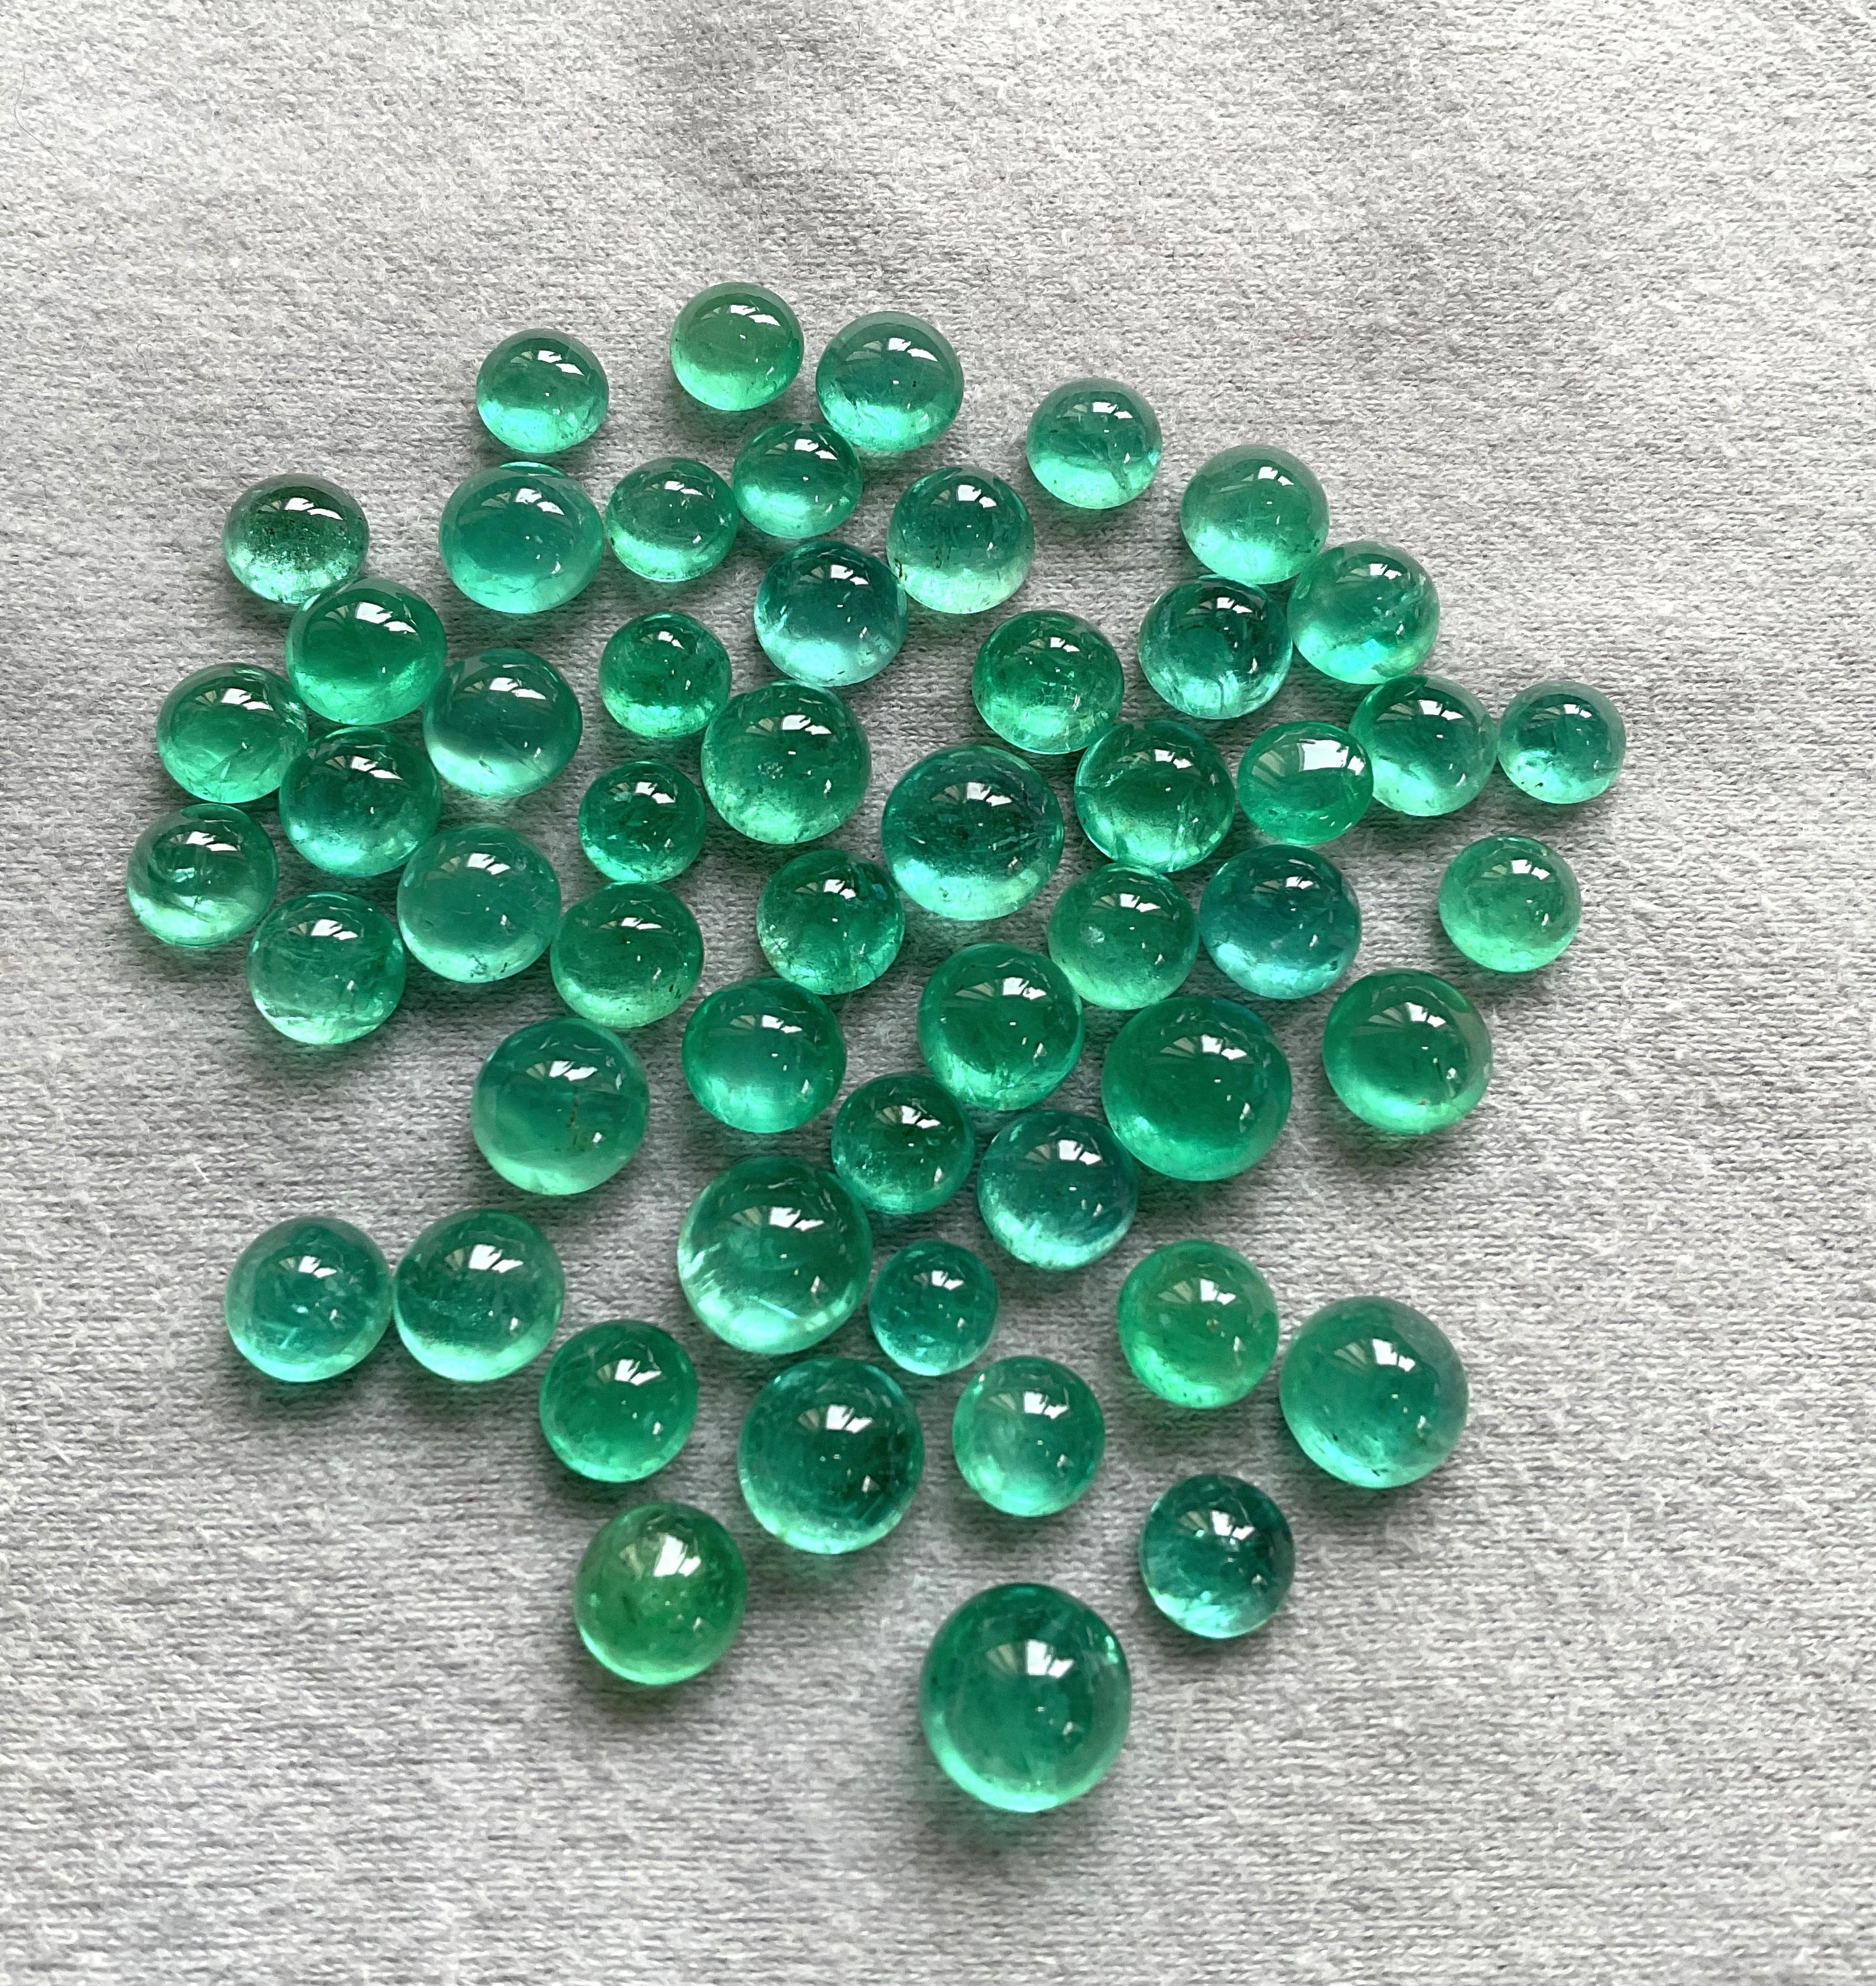 111.00 carats Zambian Emerald Round Plain Cabs Top Quality For Jewelry Gemstone 

Pierre précieuse : Émeraude
Forme : Cabines rondes
Poids : 111,00 carats
Taille - 6 à 9 MM
Quantité - 53 pièces